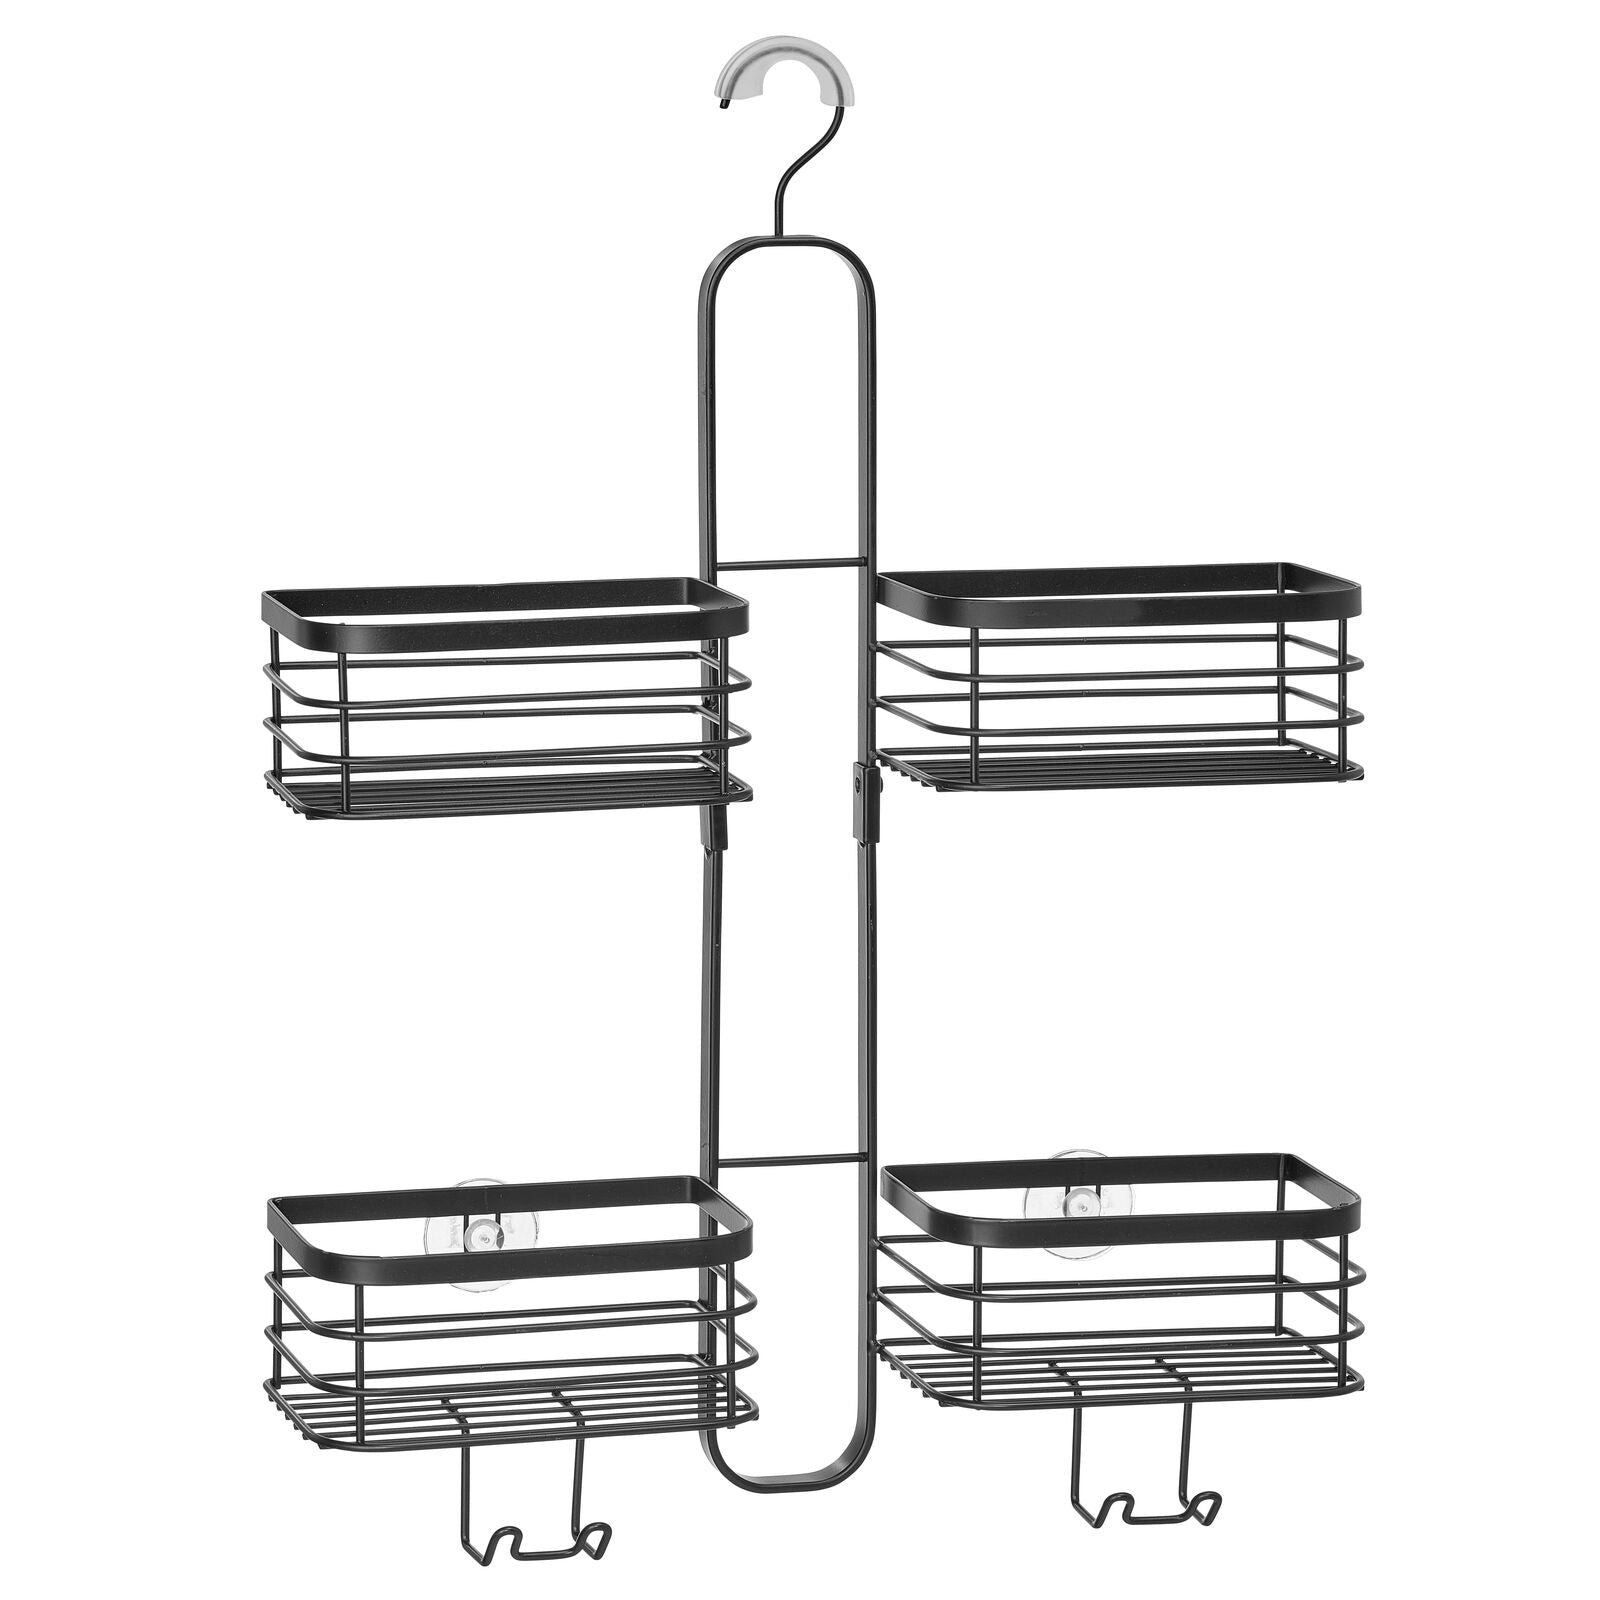 mDesign Steel Over Door Hanging Shower Caddy Storage Organizer - Gray/White